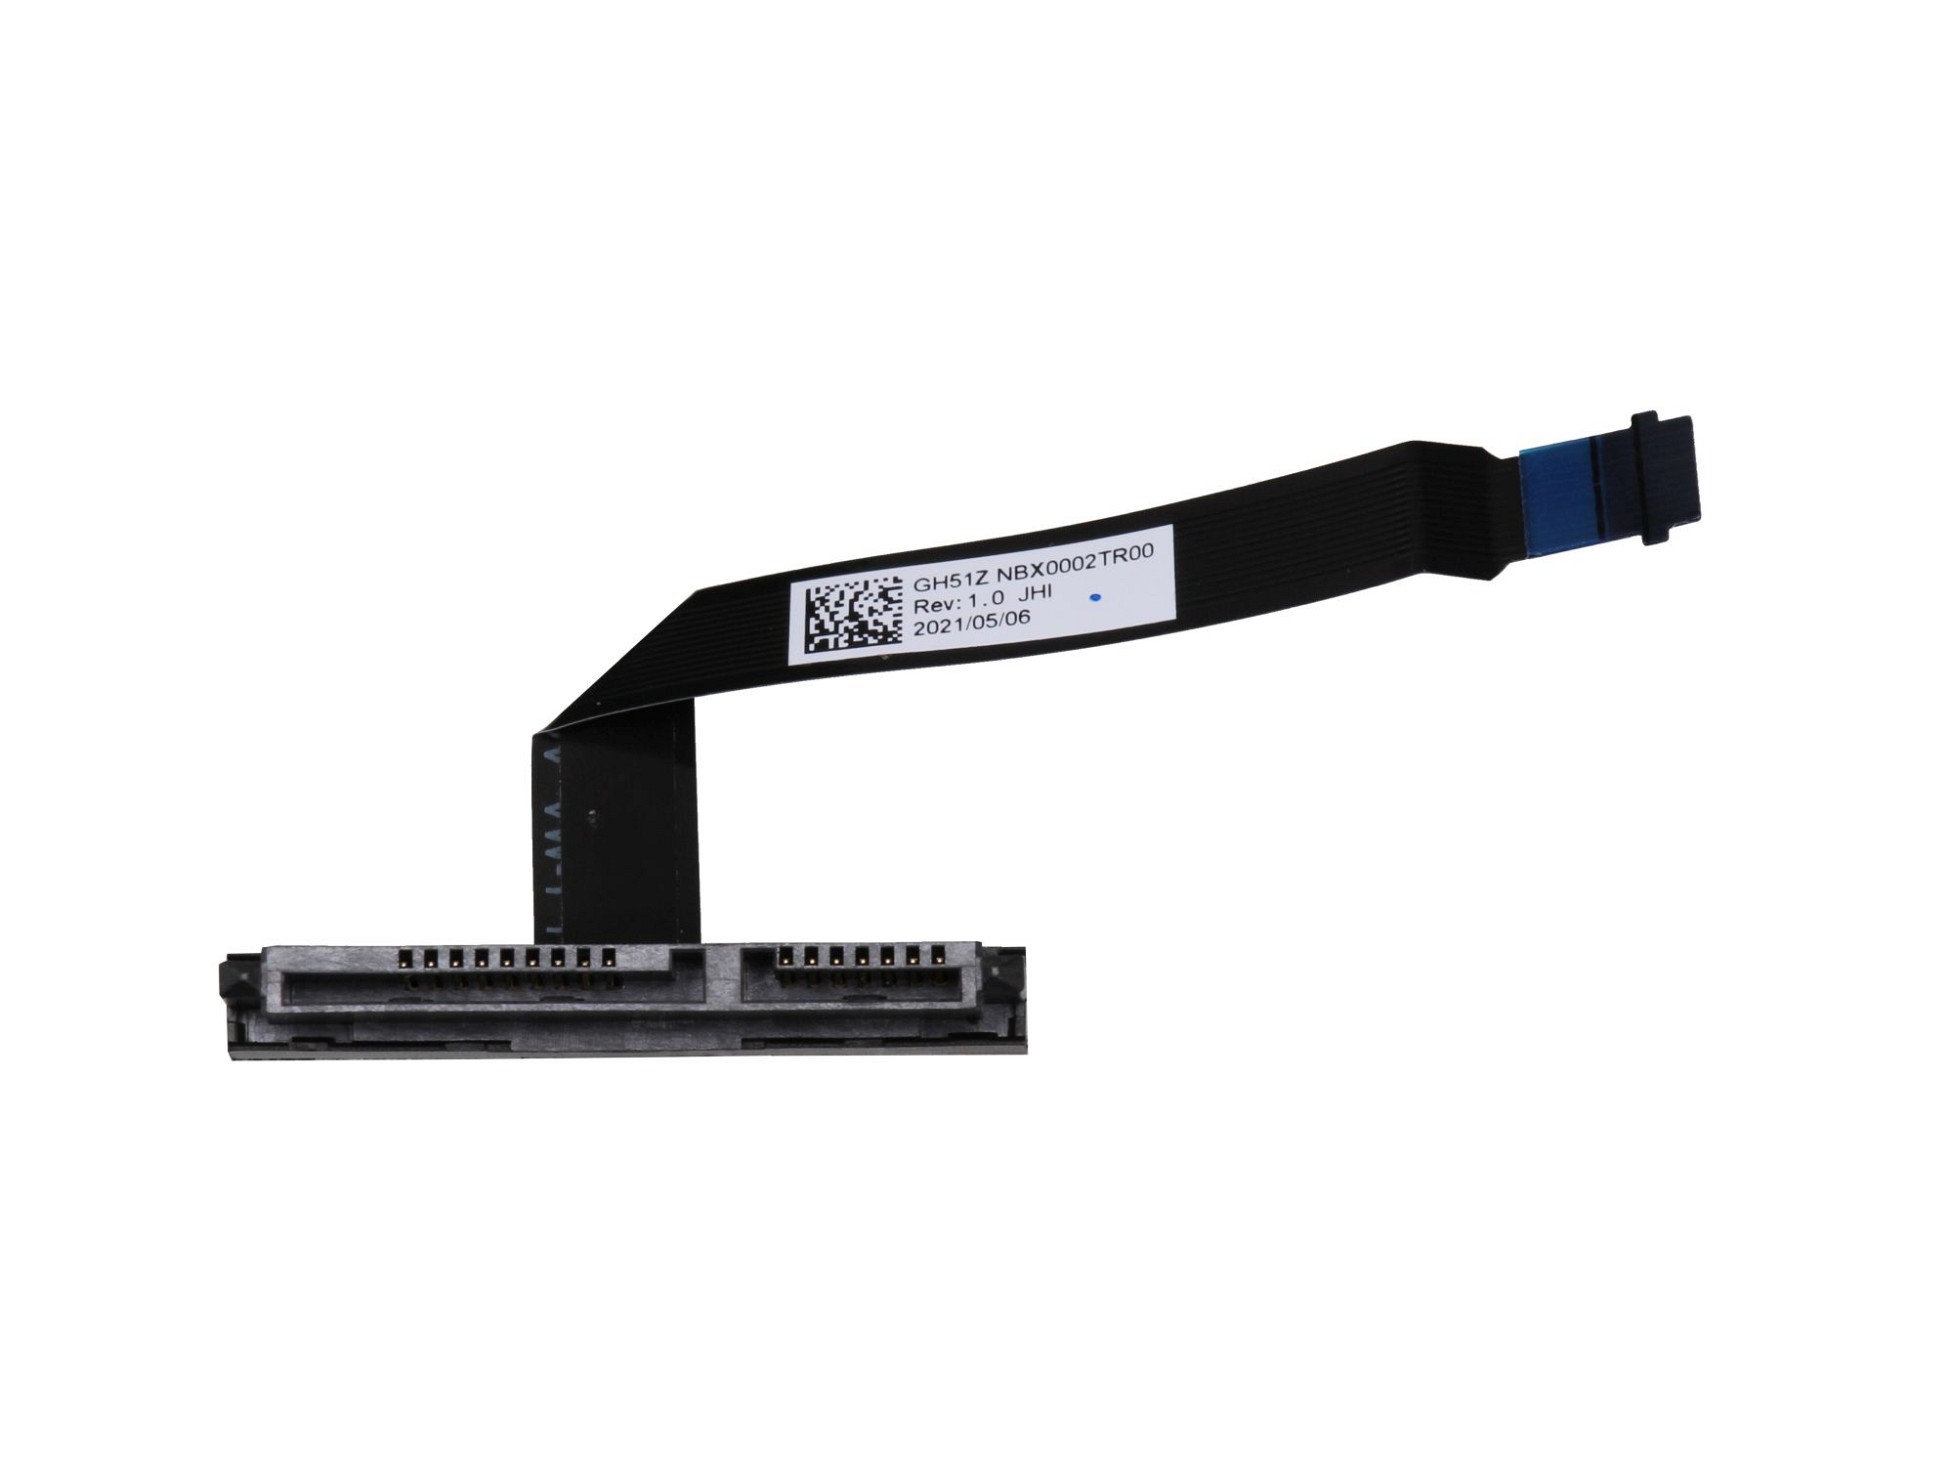 Acer GH512.NBX0002TR00 Festplatten-Adapter für den 1. Festplatten Schacht Original